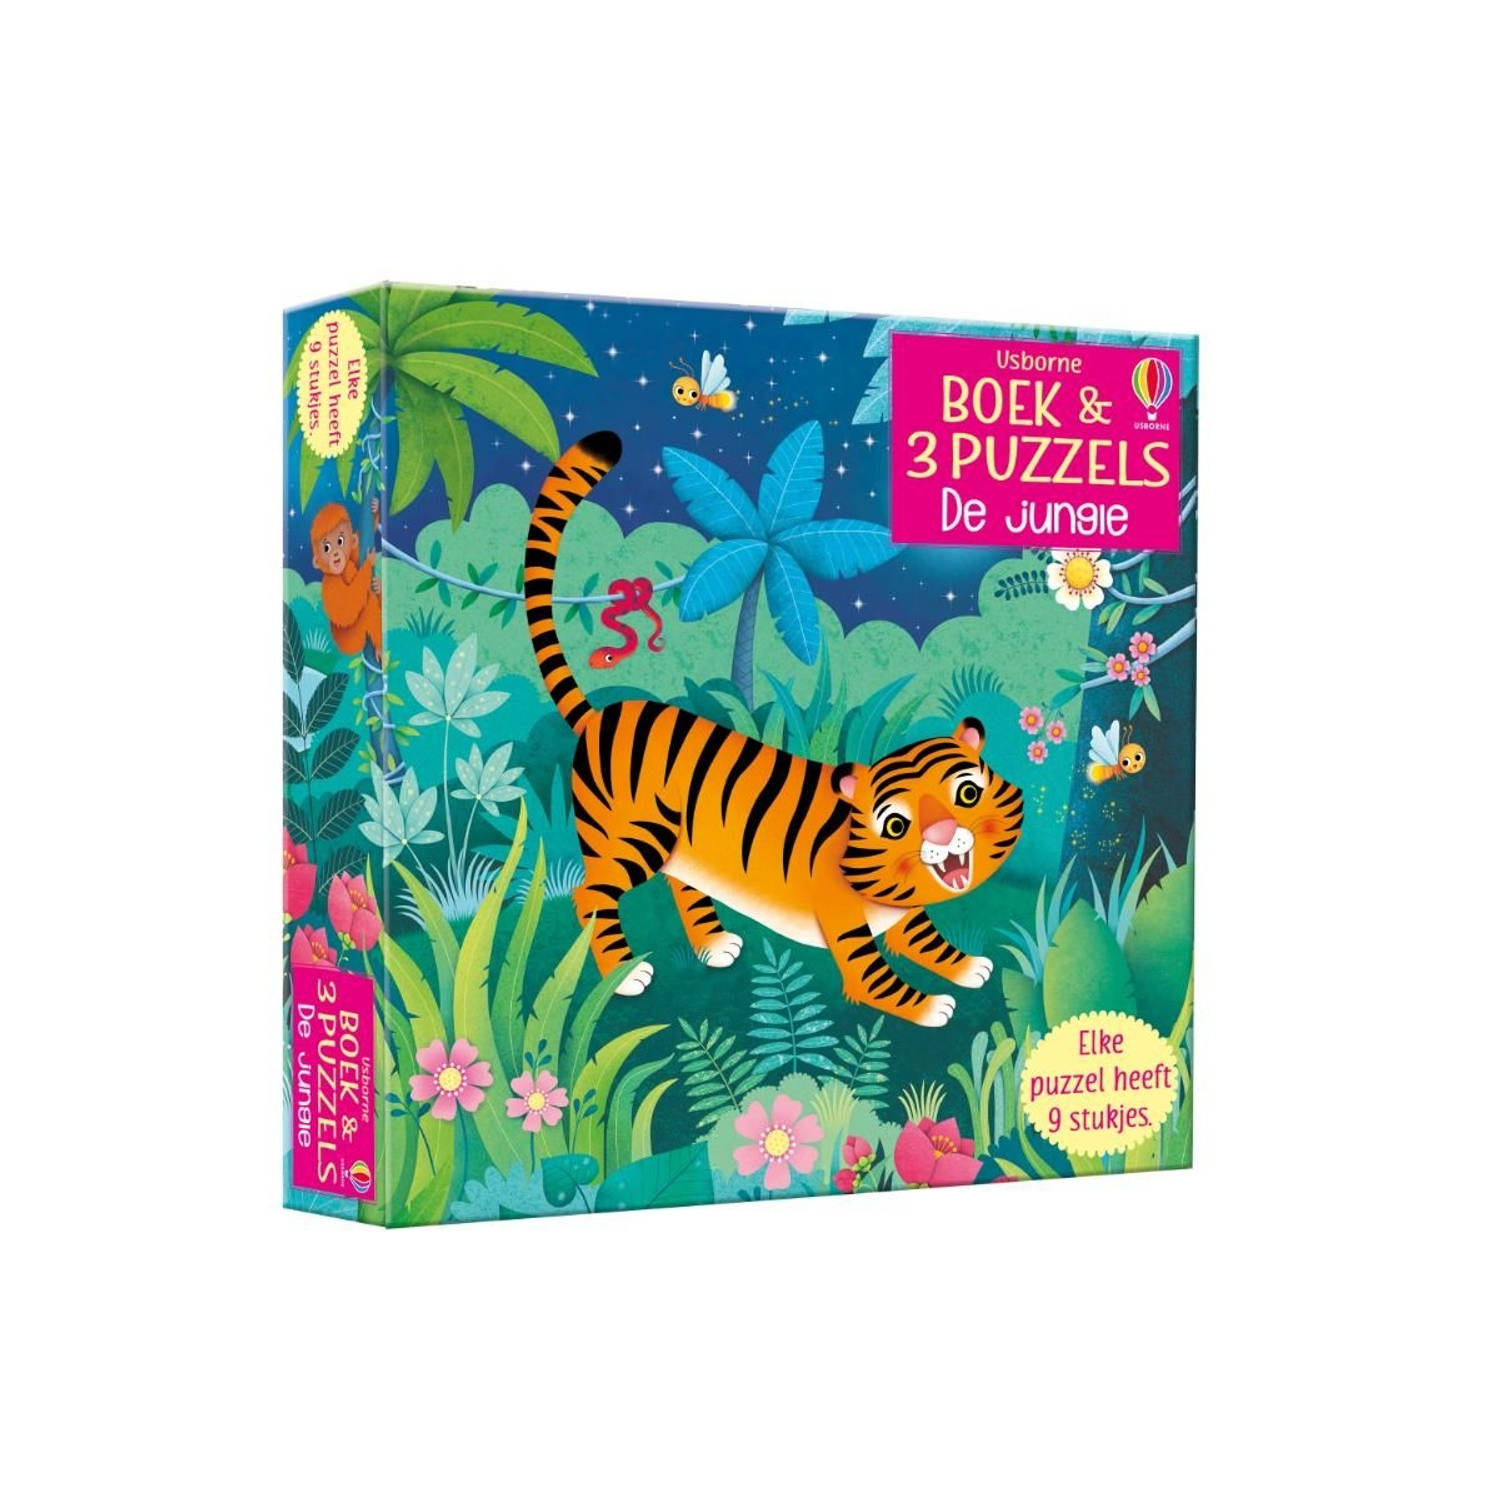 Boek & 3 Puzzels De jungle